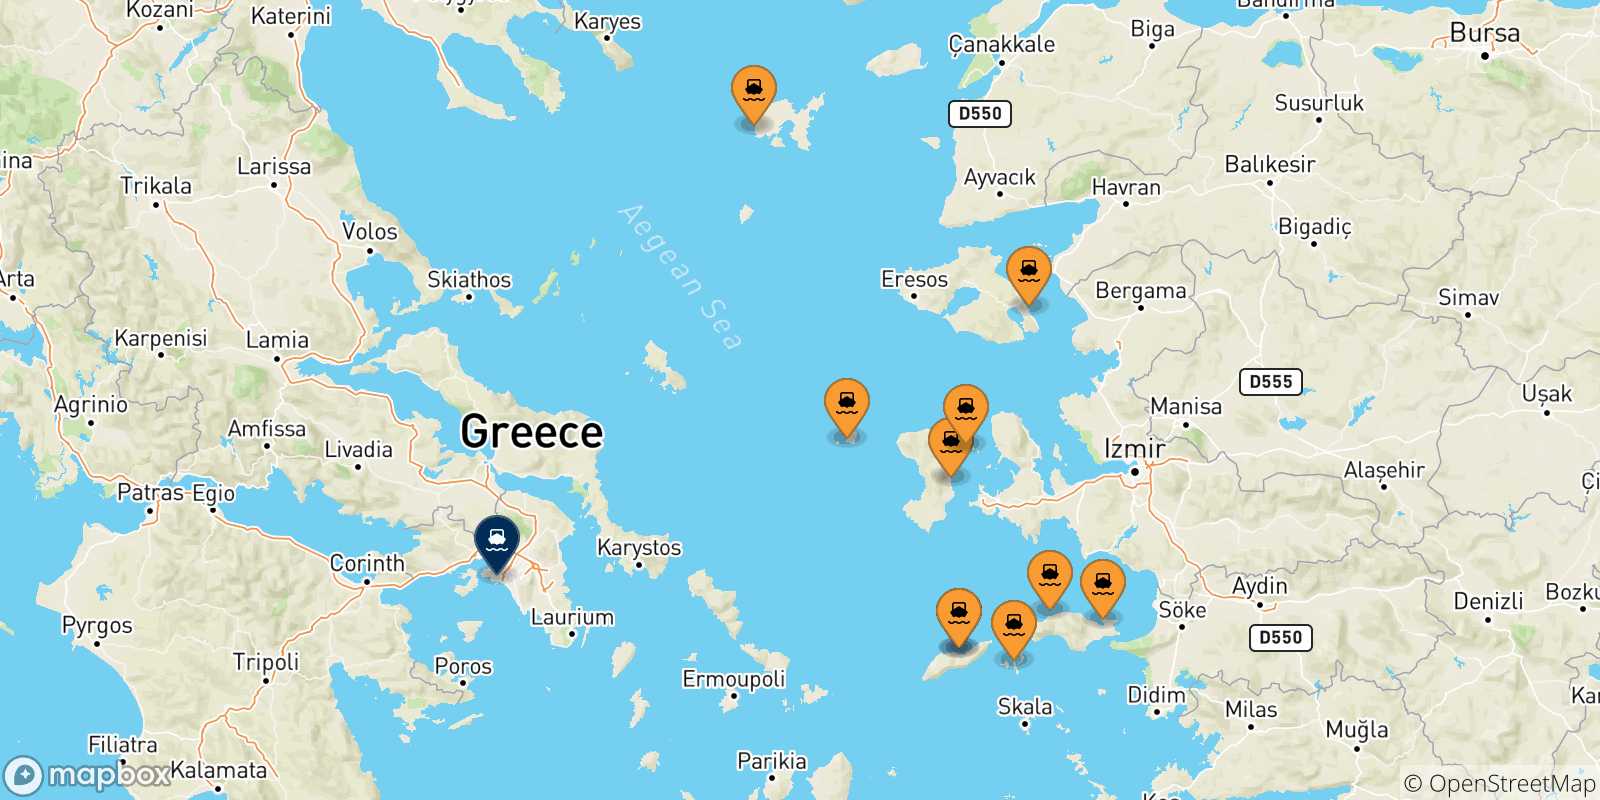 Mappa delle possibili rotte tra le Isole Egeo Nord Orientale e Pireo